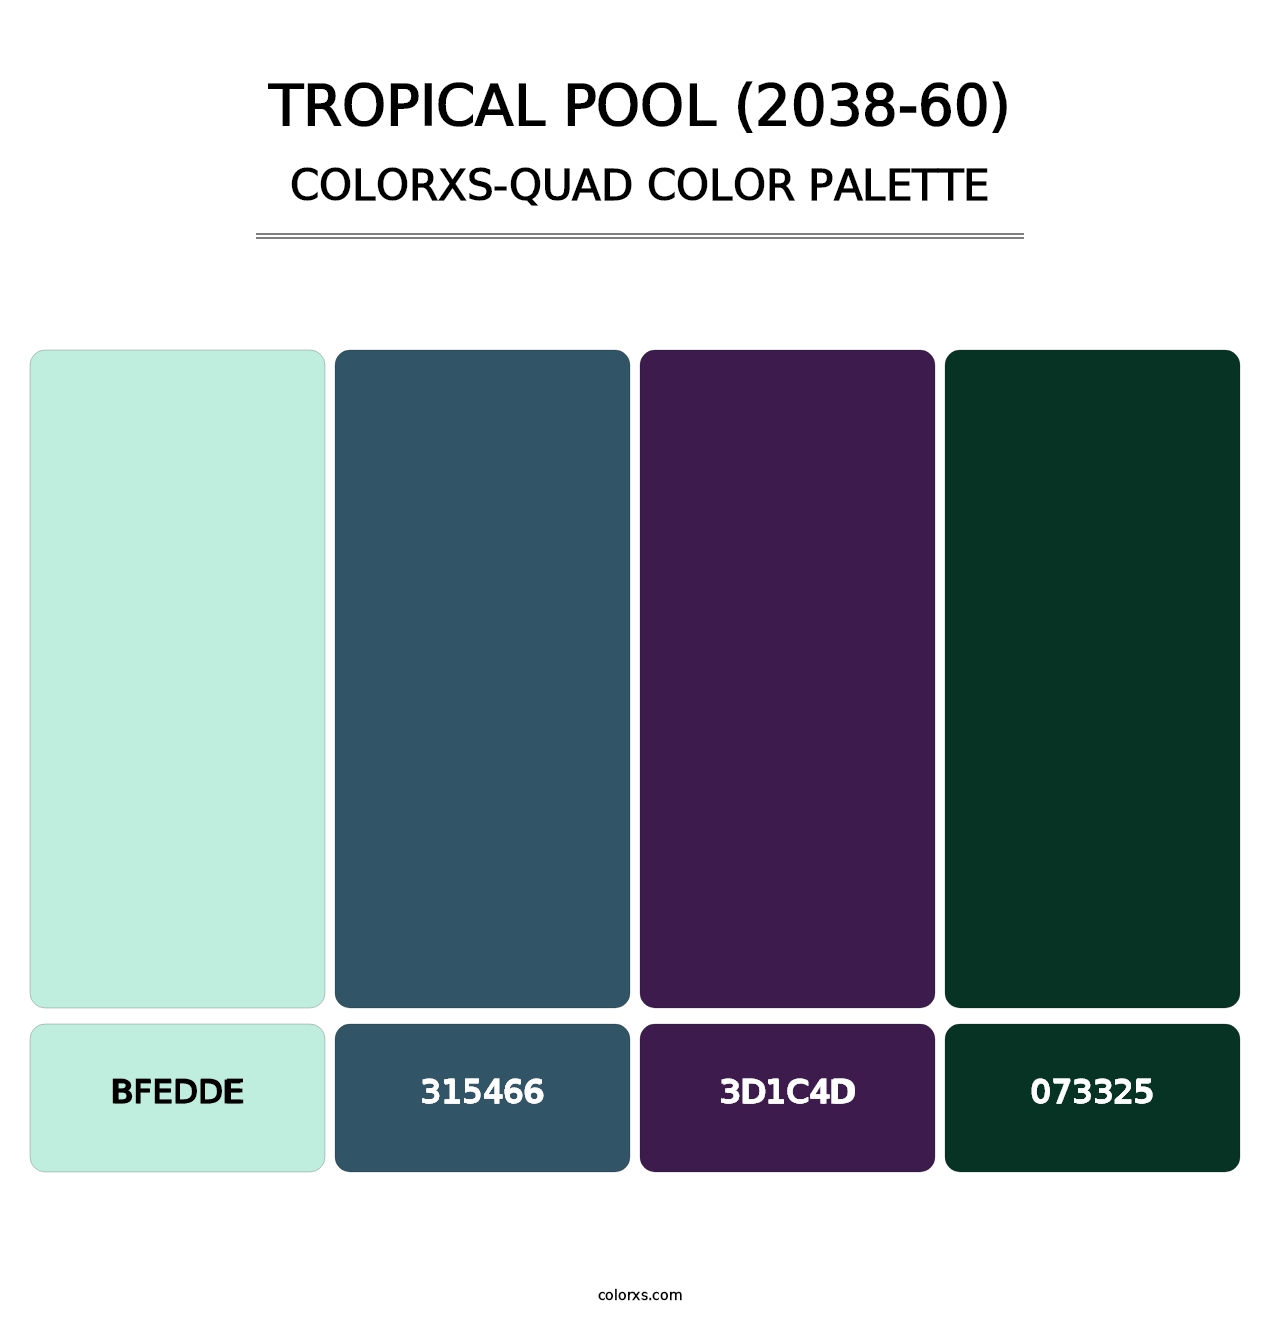 Tropical Pool (2038-60) - Colorxs Quad Palette